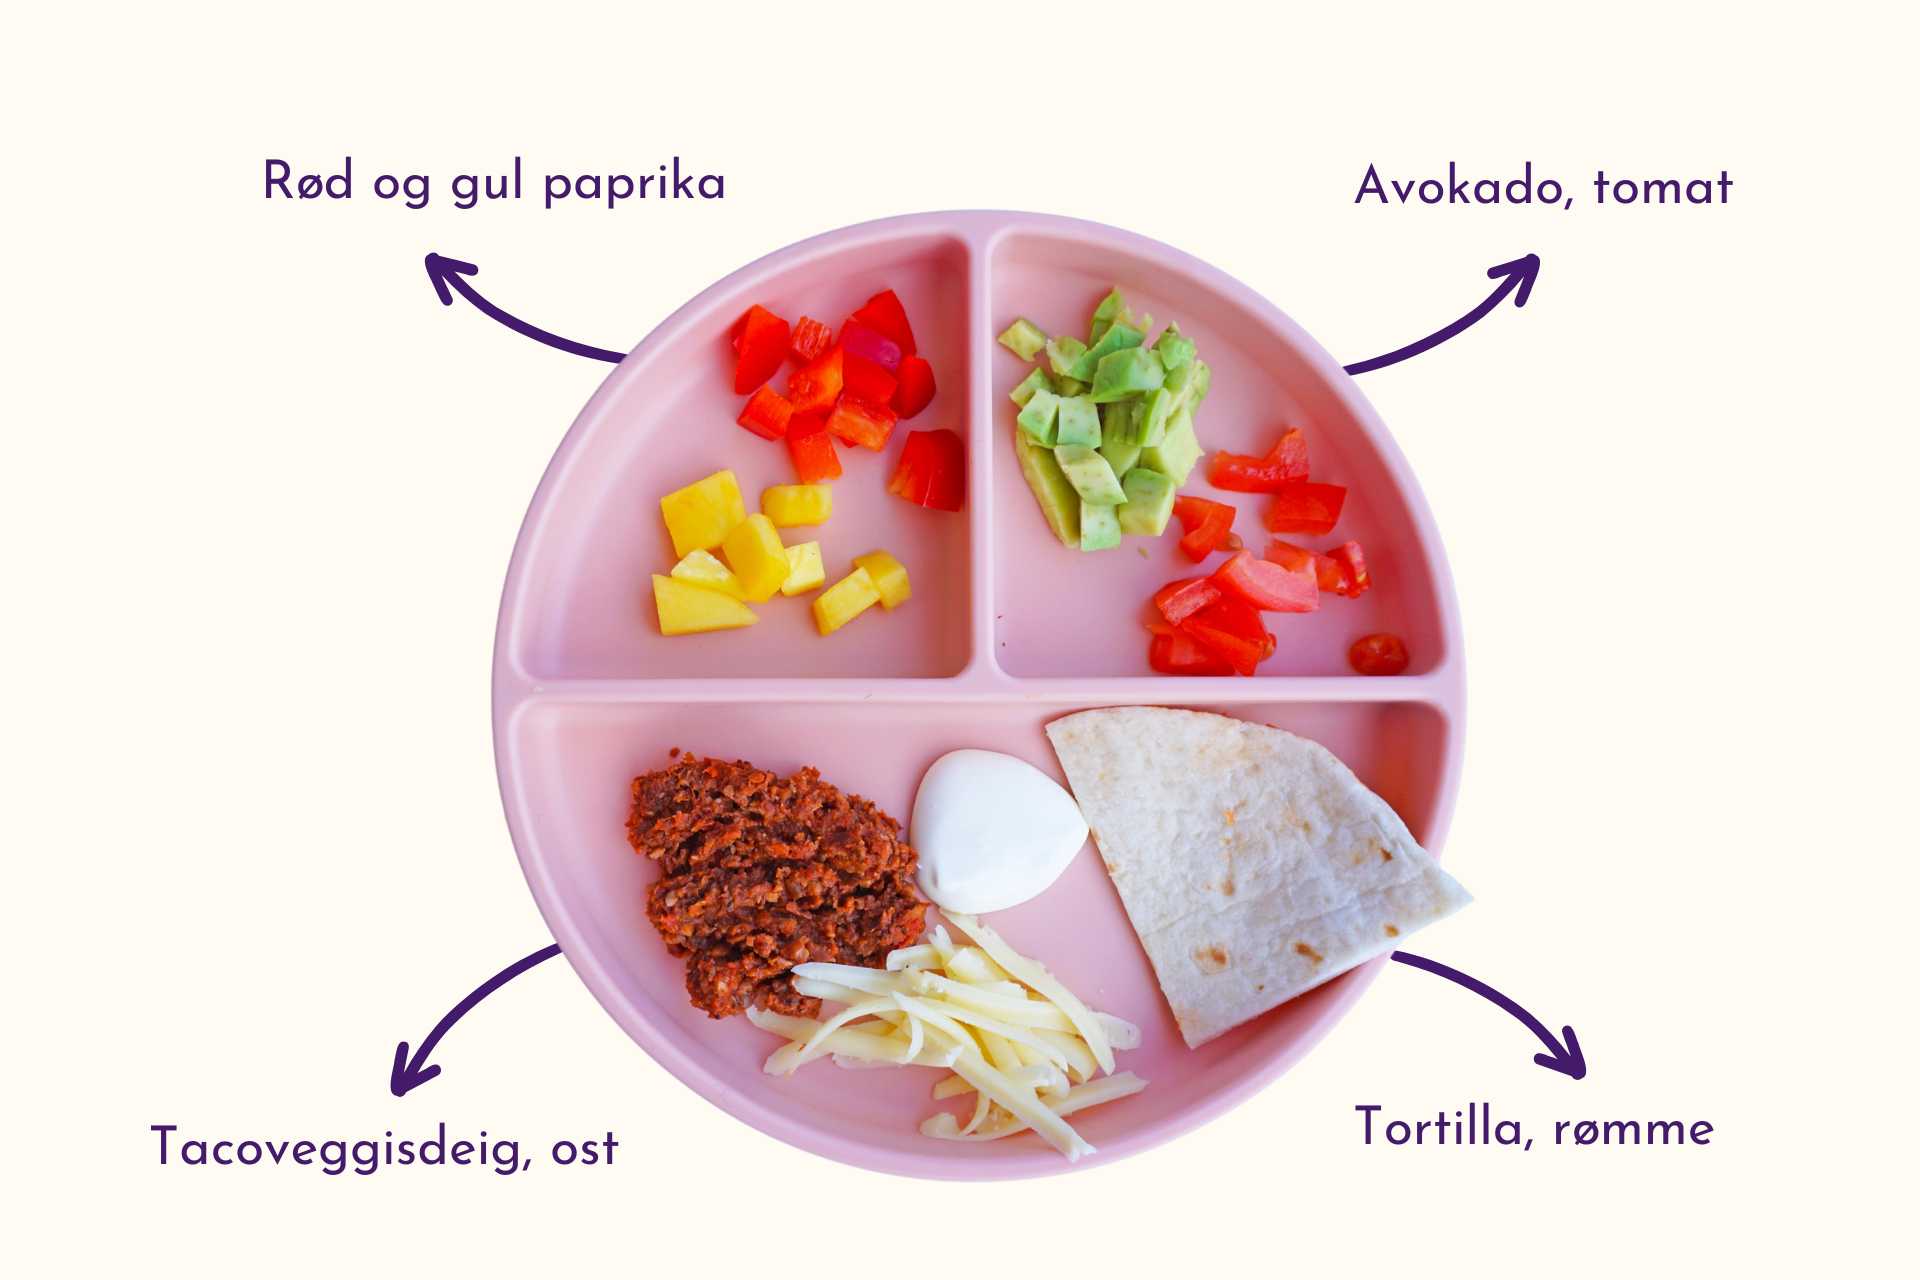 barnevennlig taco med veggisdeig